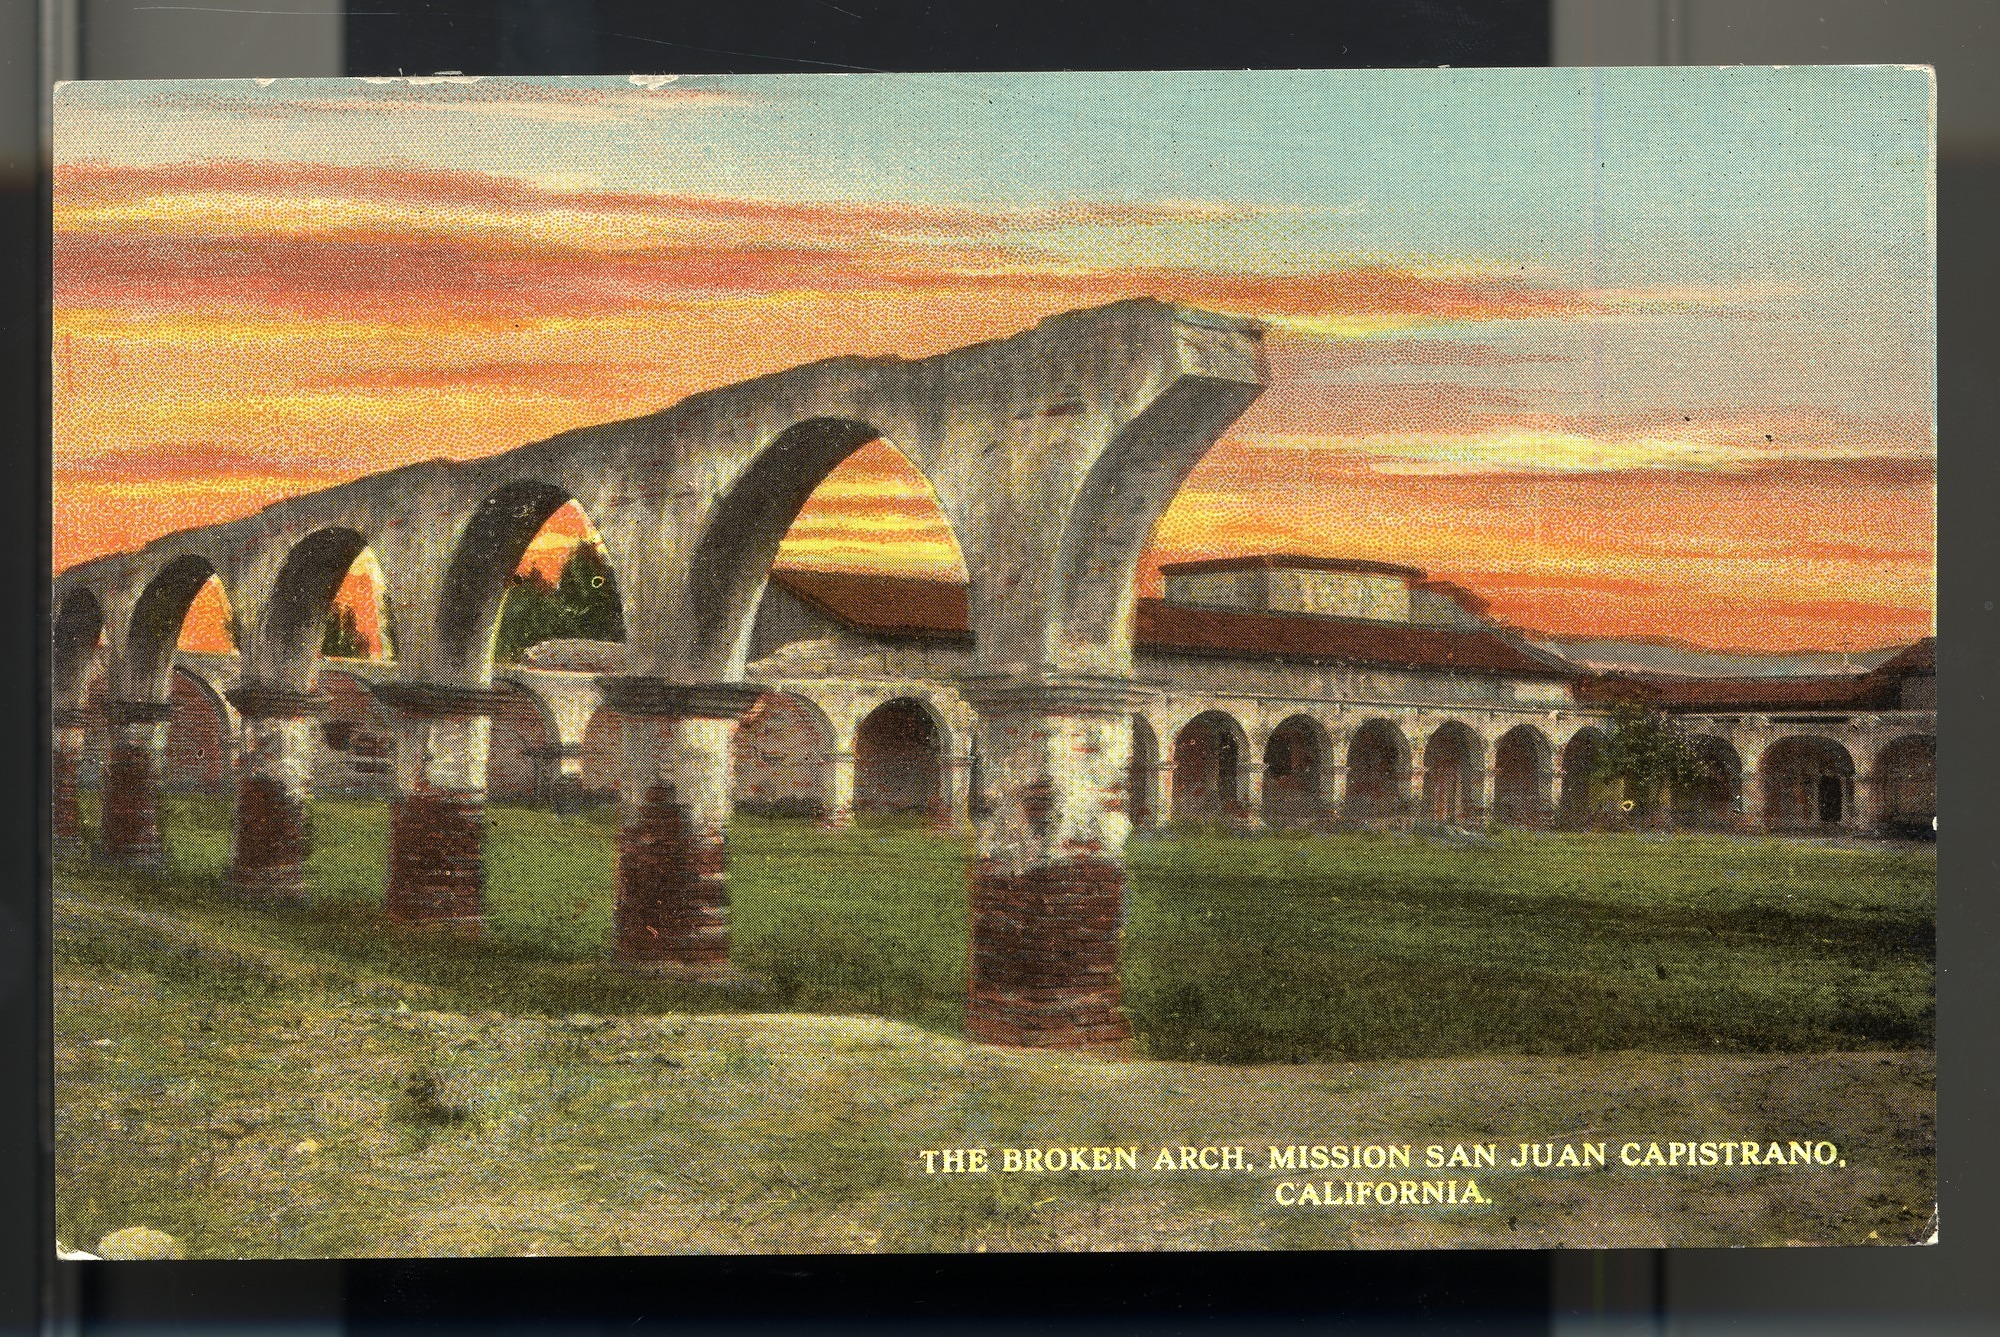 Postcard 27 – The Broken Arch, Mission San Juan Capistrano, California. Eno & Matteson. Curt Teich Company. ca 1915. NMAH 1986.0639.0600.